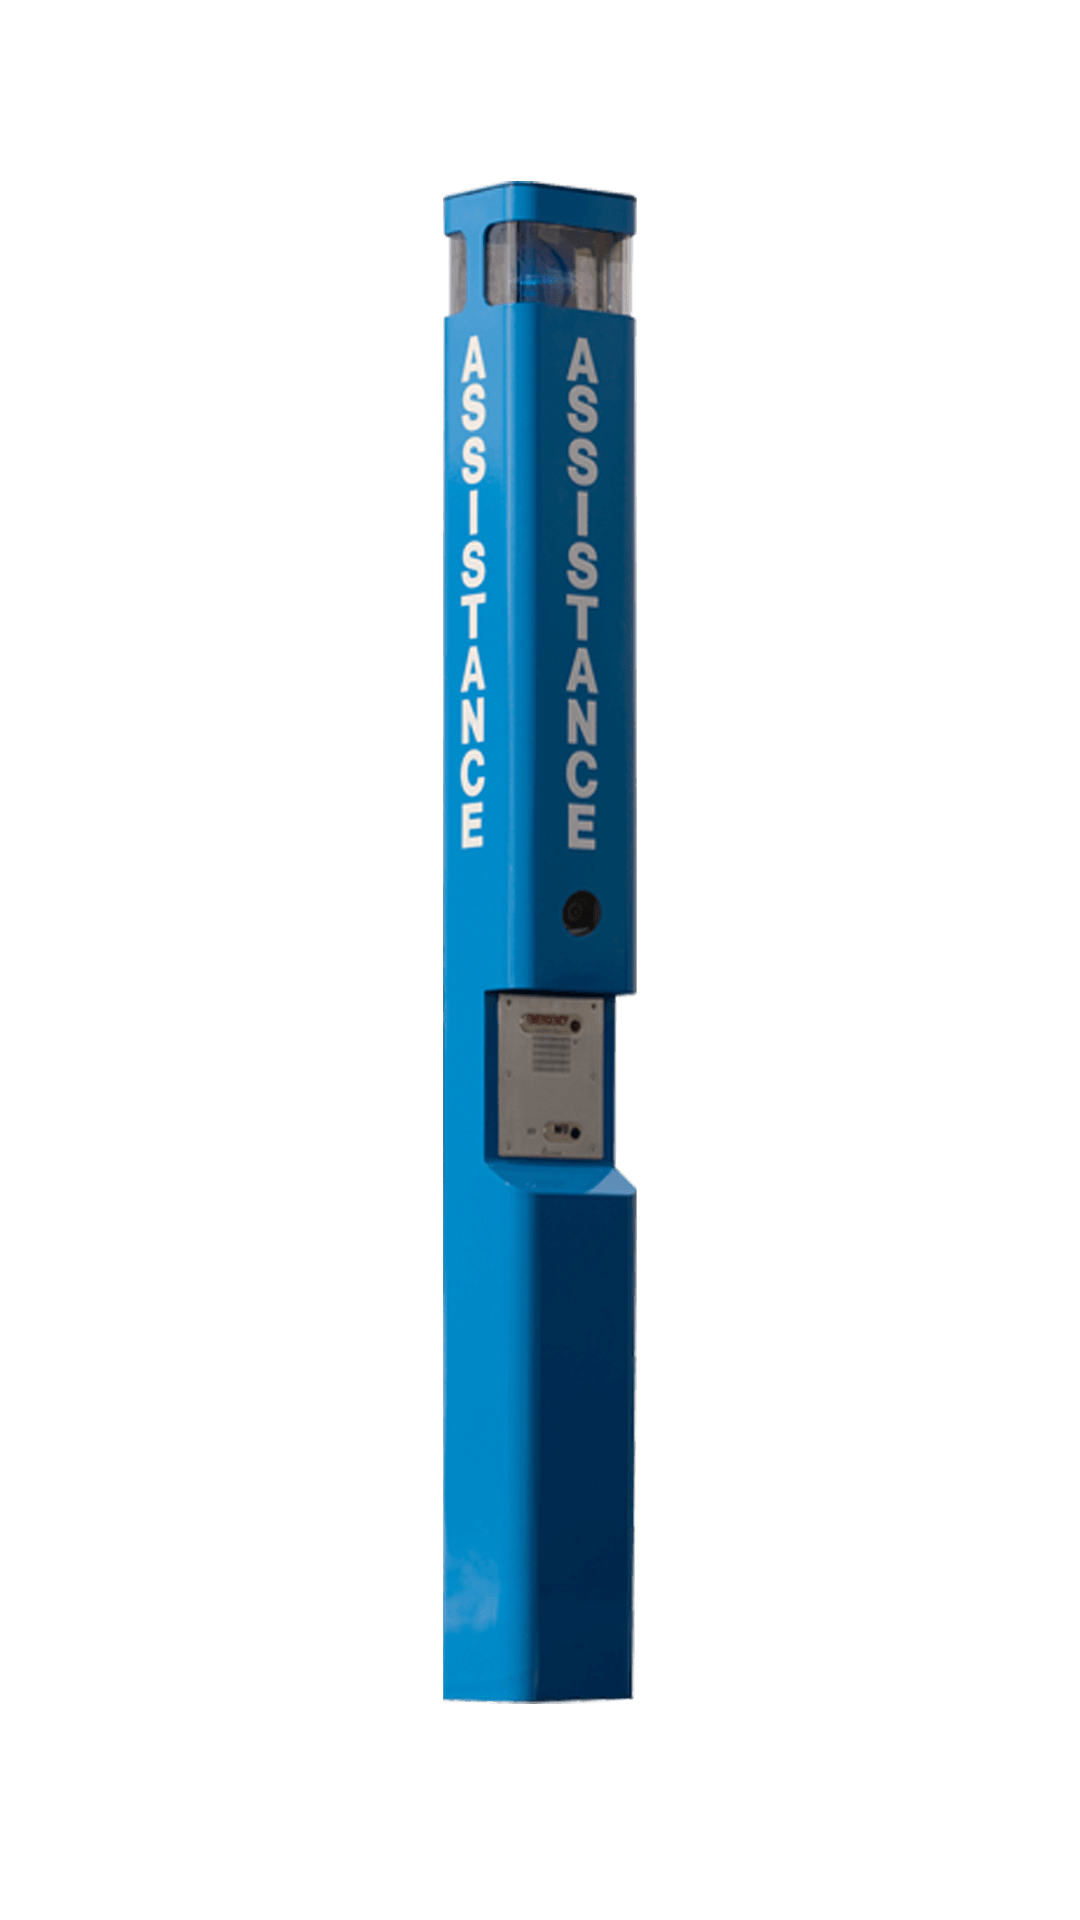 Radius Blue Light Phone Tower, Fixed Camera Ready